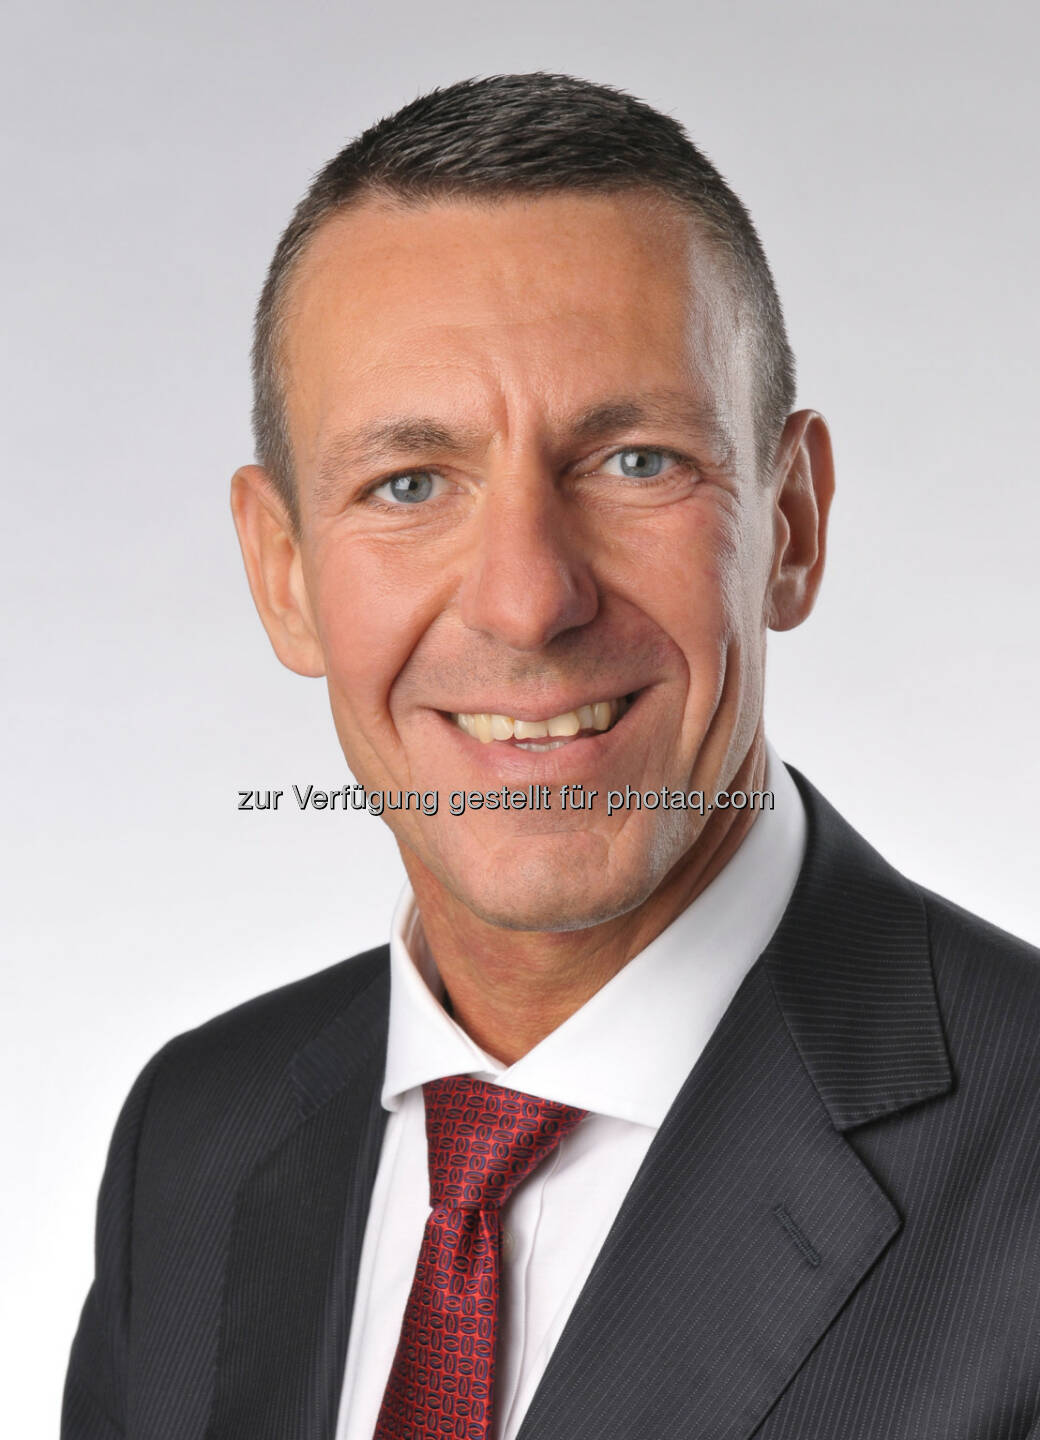  Frank H. Lutz bleibt Finanzvorstand von Covestro. (C) Bayer AG